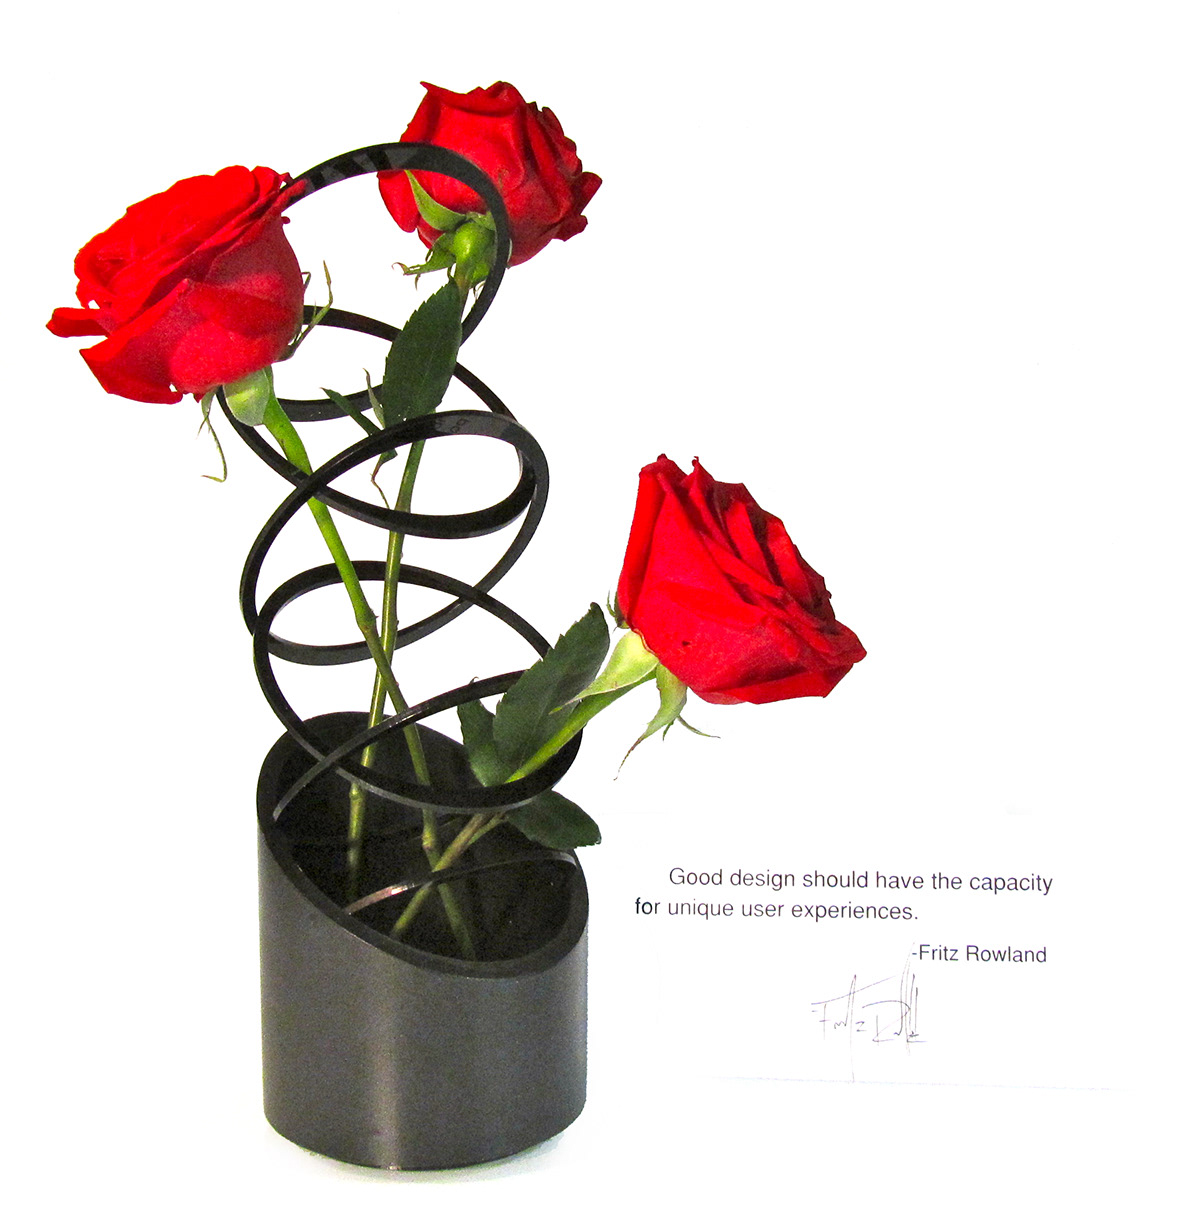 flower Vase